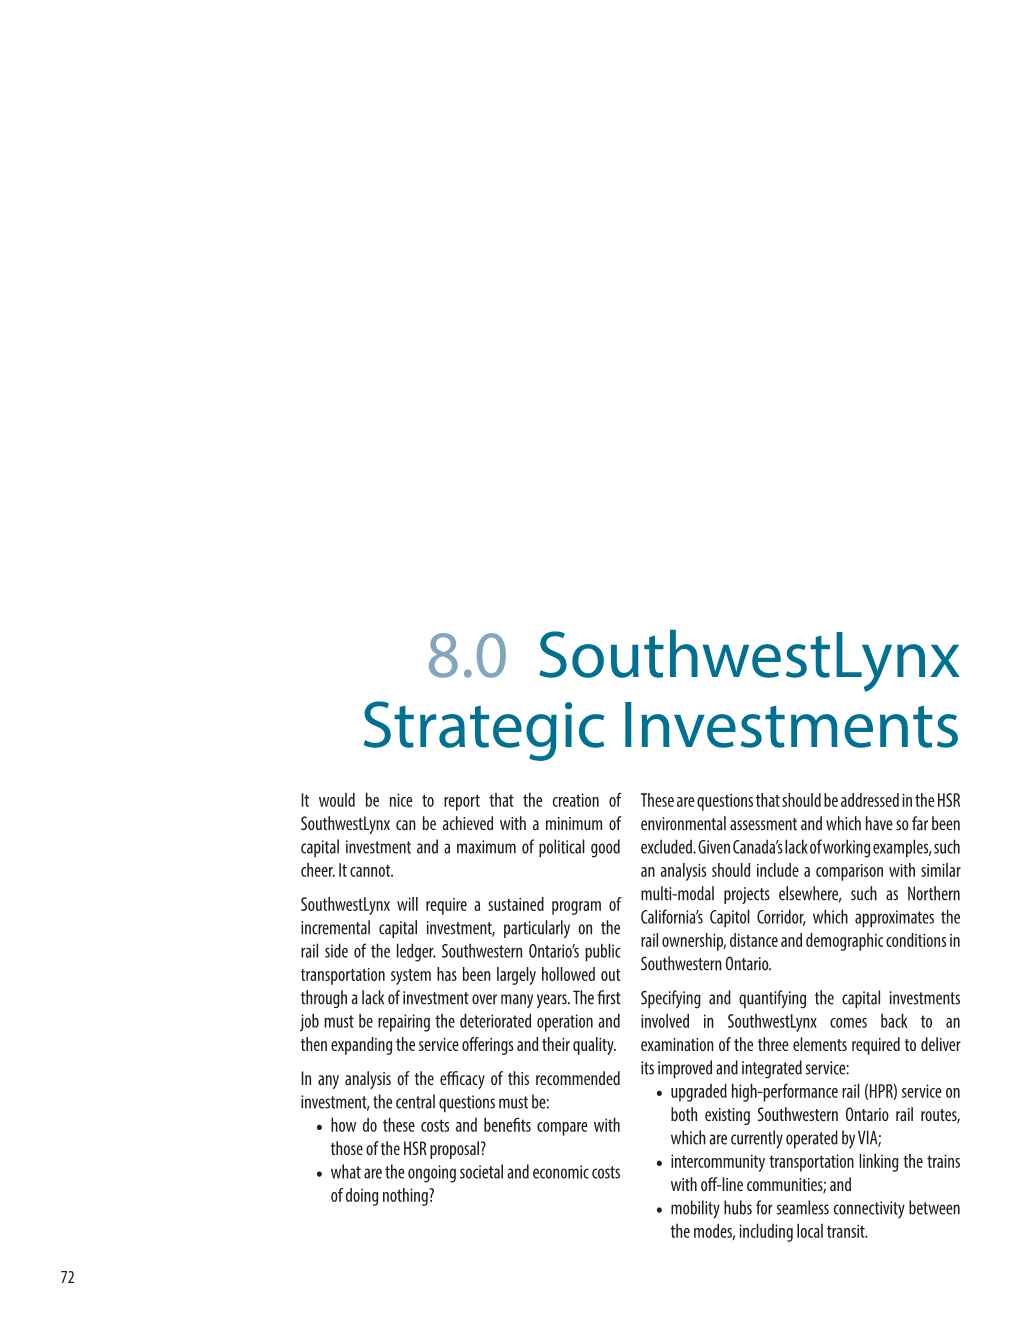 8.0 Southwestlynx Strategic Investments